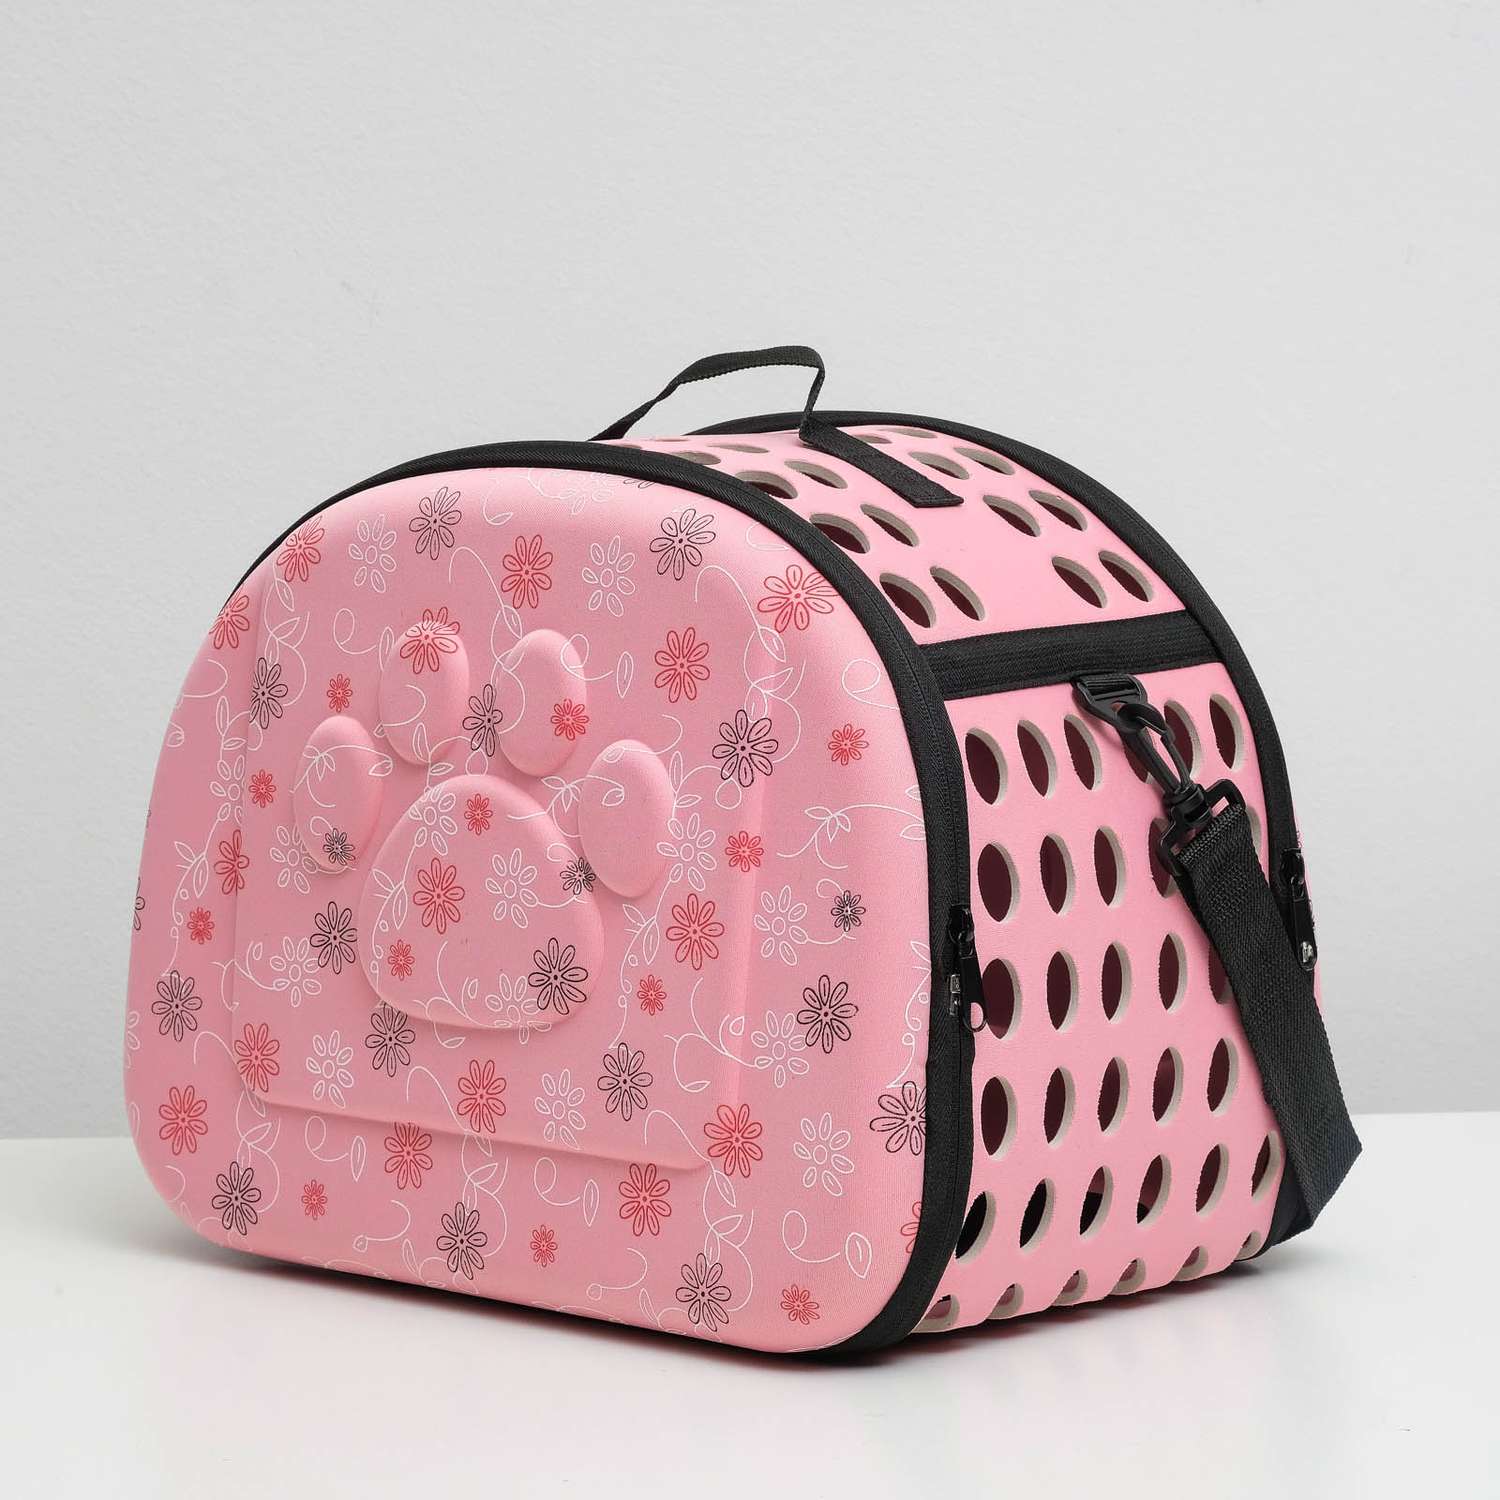 Складная сумка-переноска Пижон с отдельным входом материал EVA 43.5 х 28 х 33 см розовая - фото 1